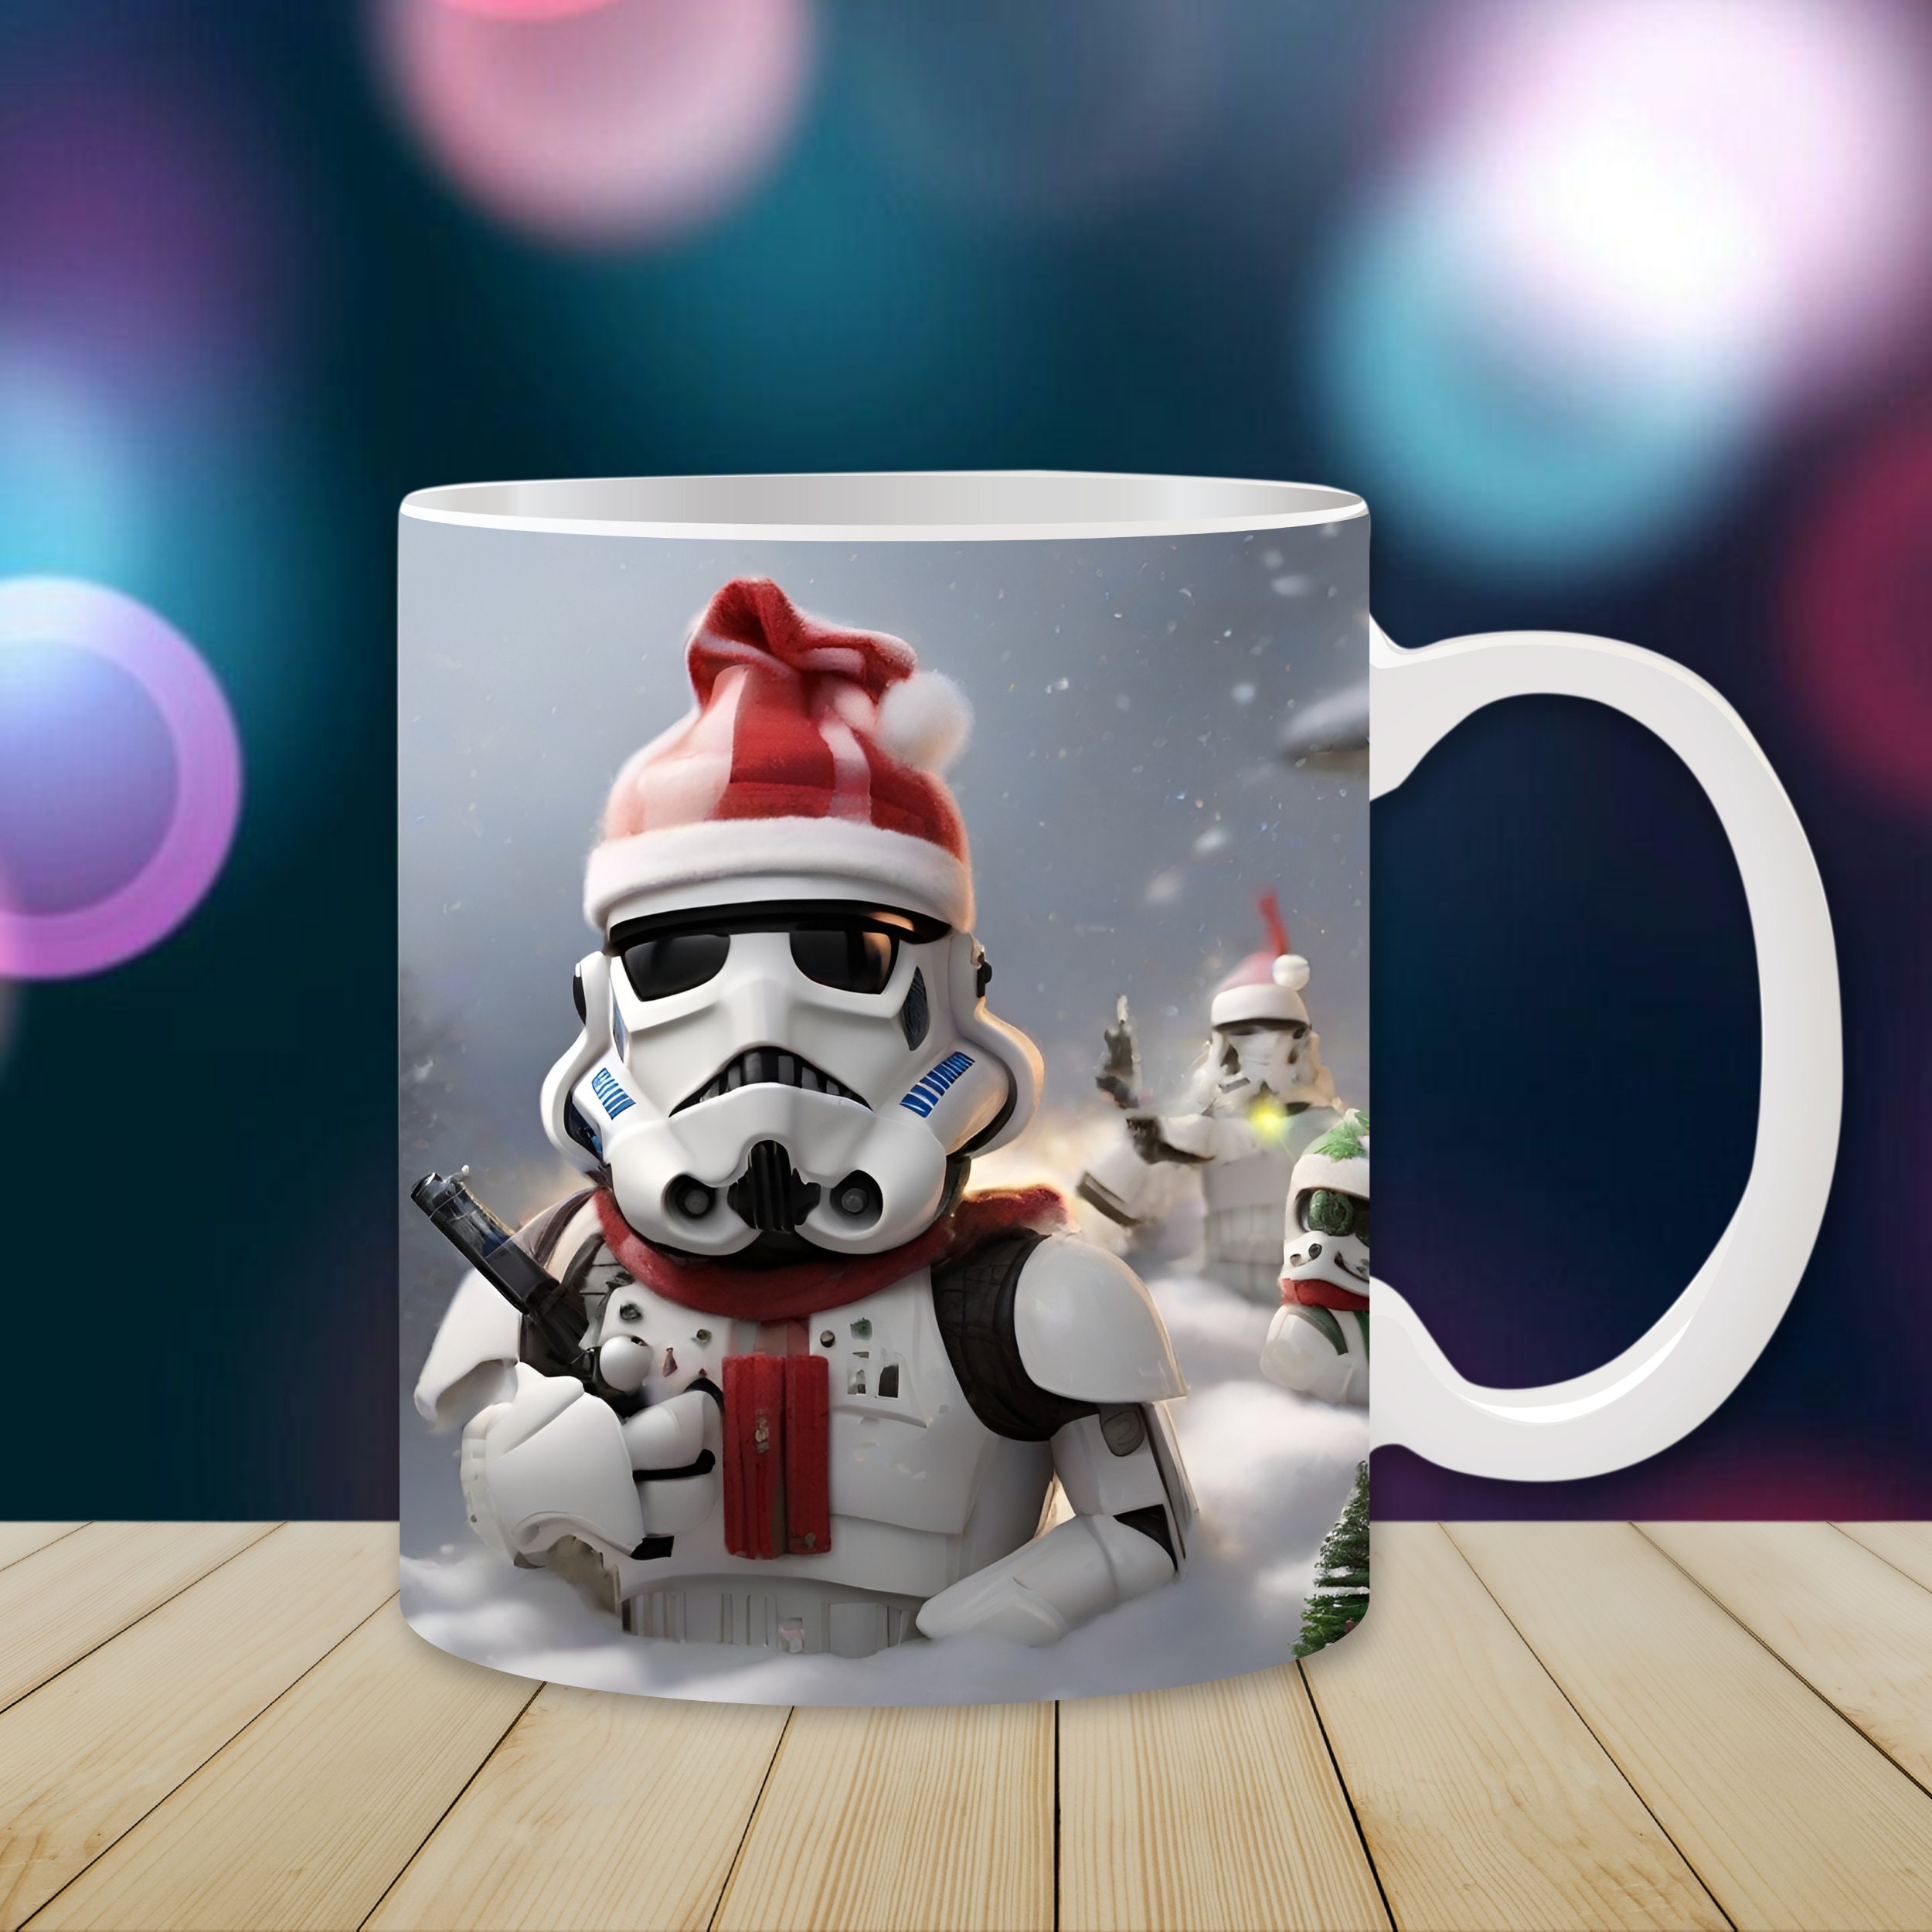 Seven20 Star Wars 20oz Ceramic Figural Mug With Lid: Stormtrooper